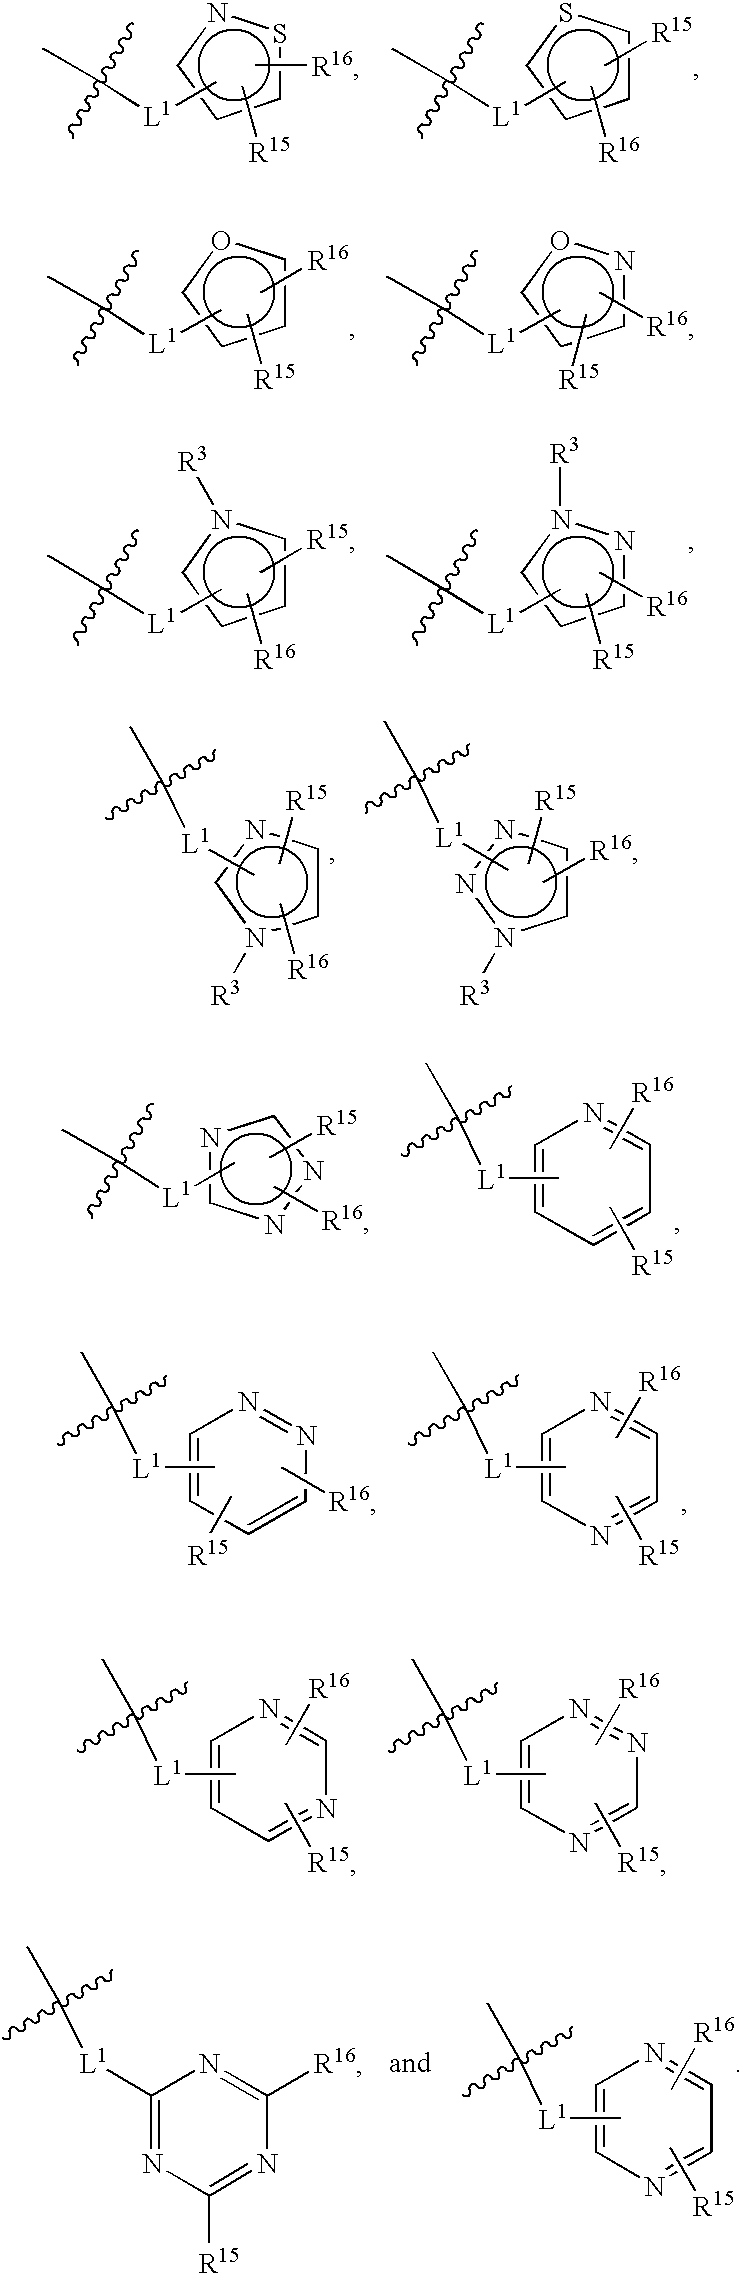 Heterocyclic modulators of PPAR